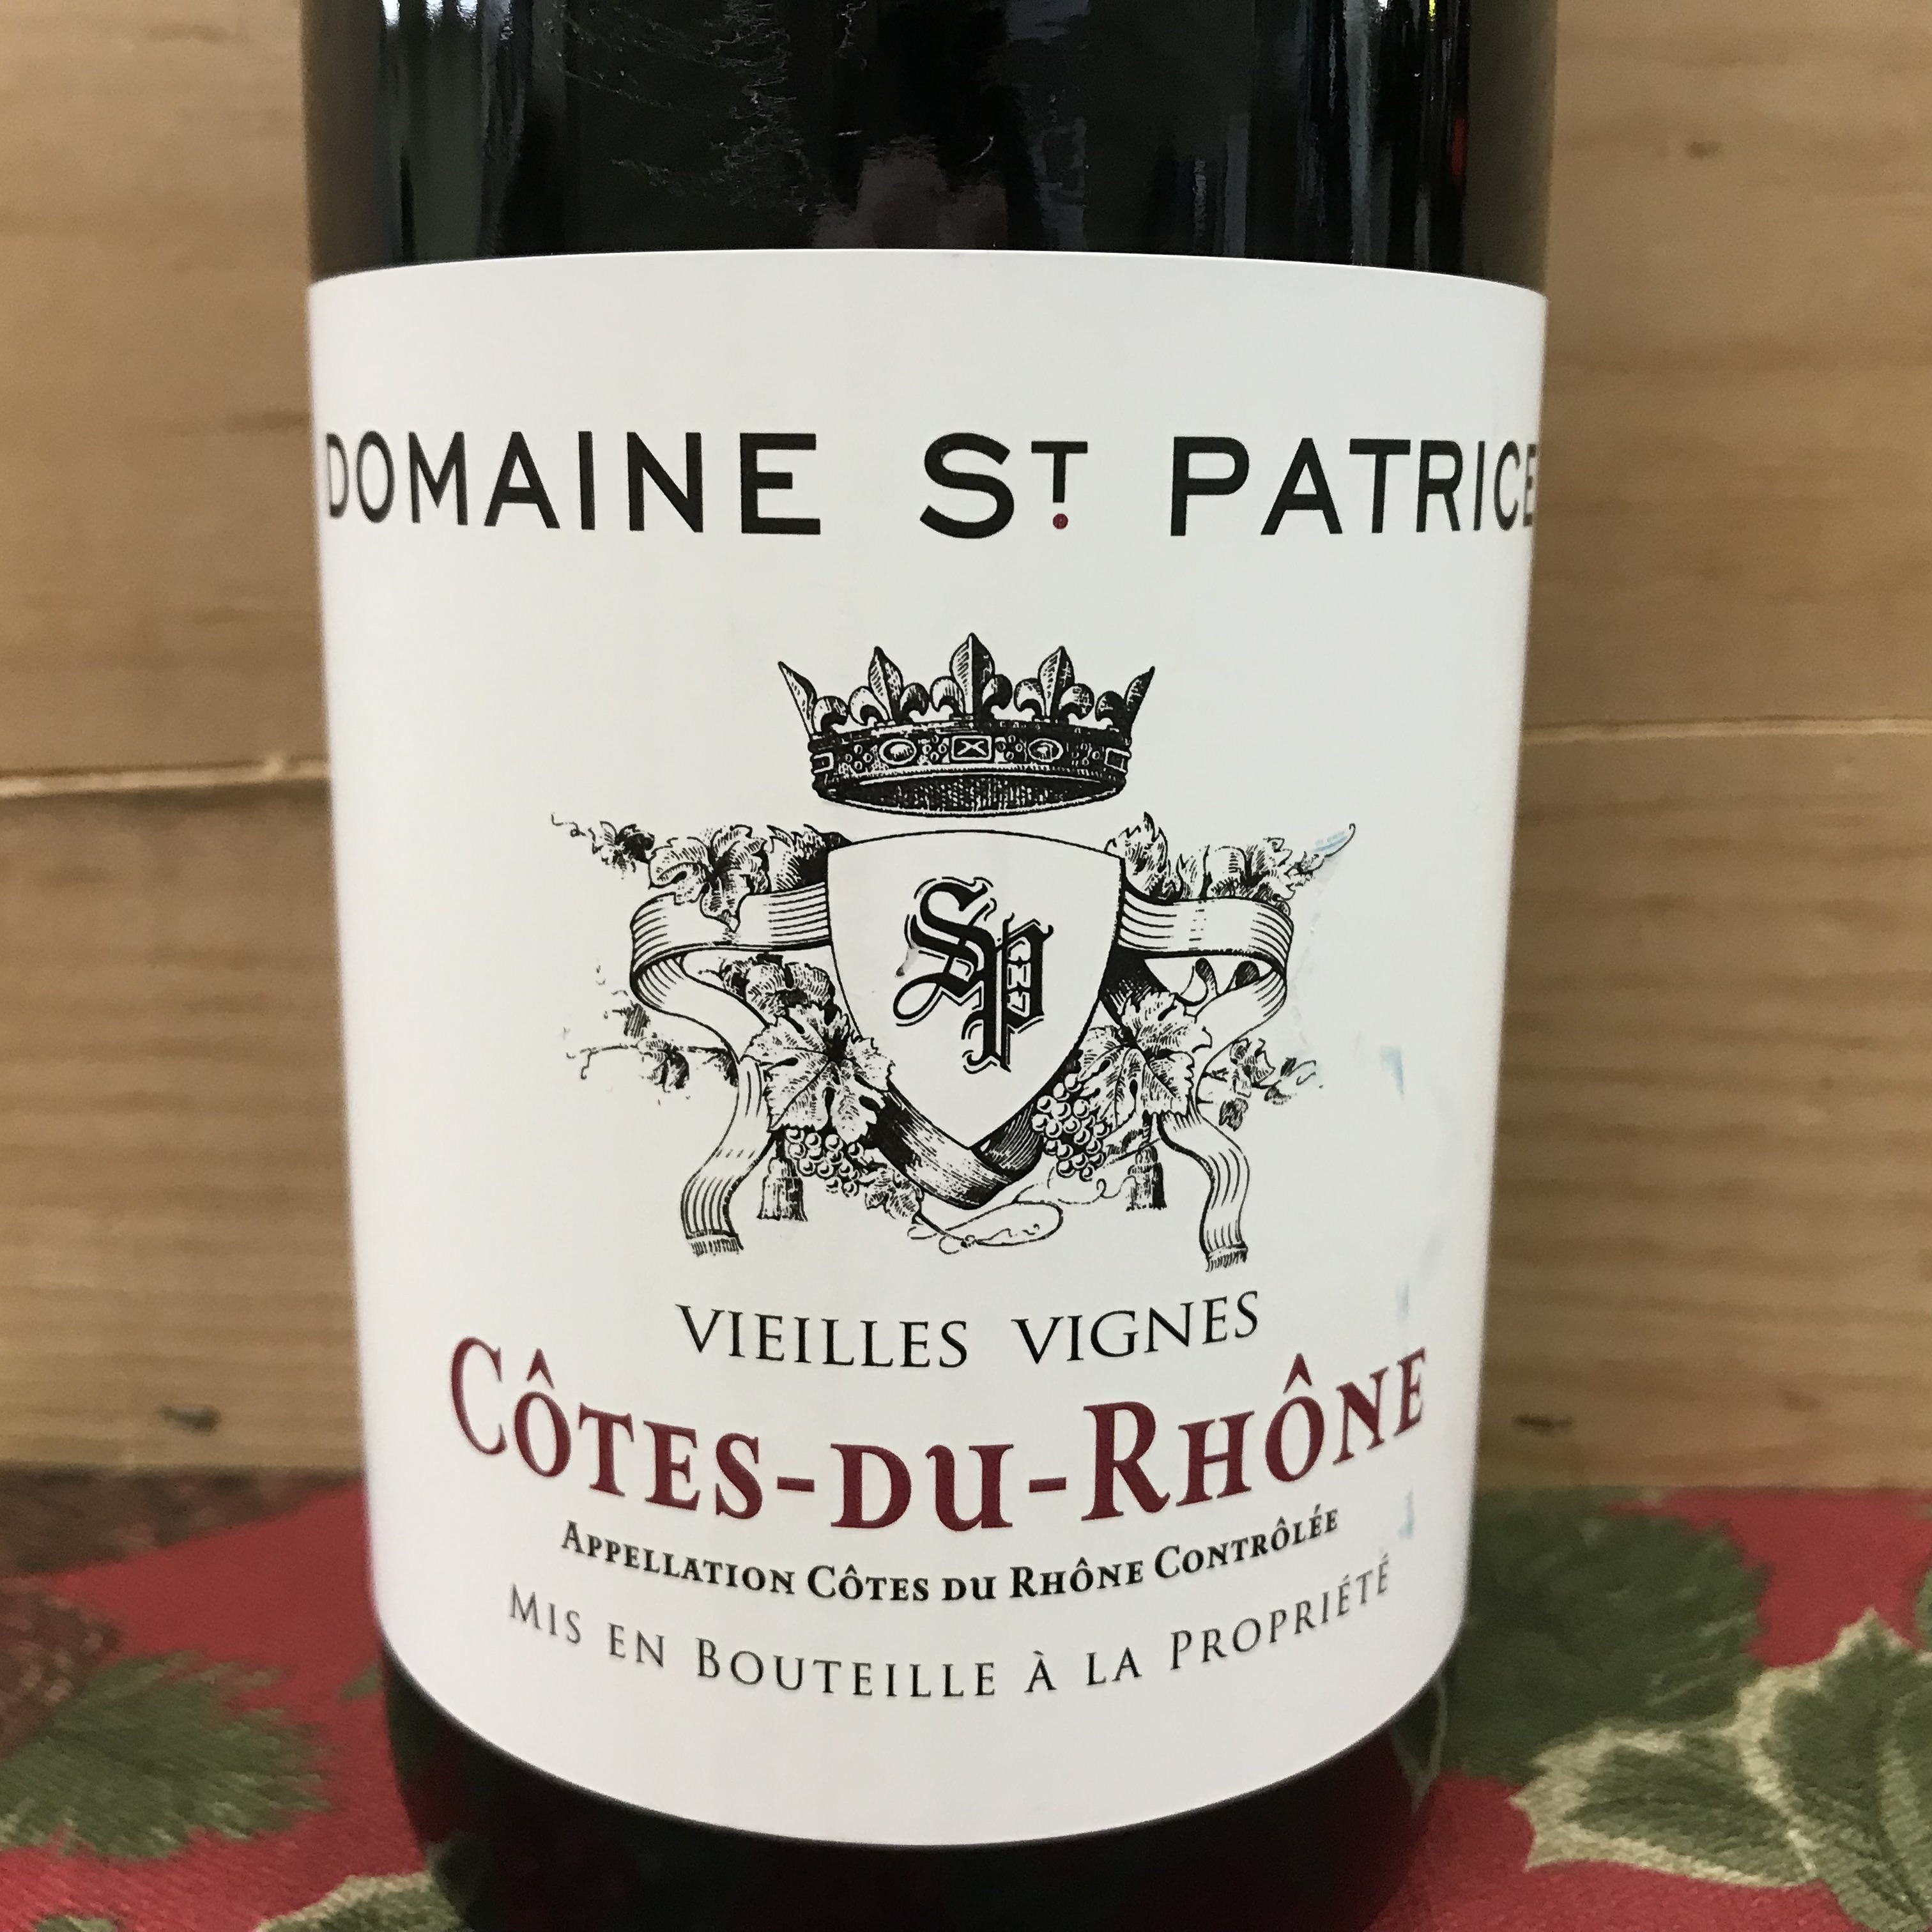 Domaine St.Patrice Cotes-du-Rhone Vielles Vigne 2018